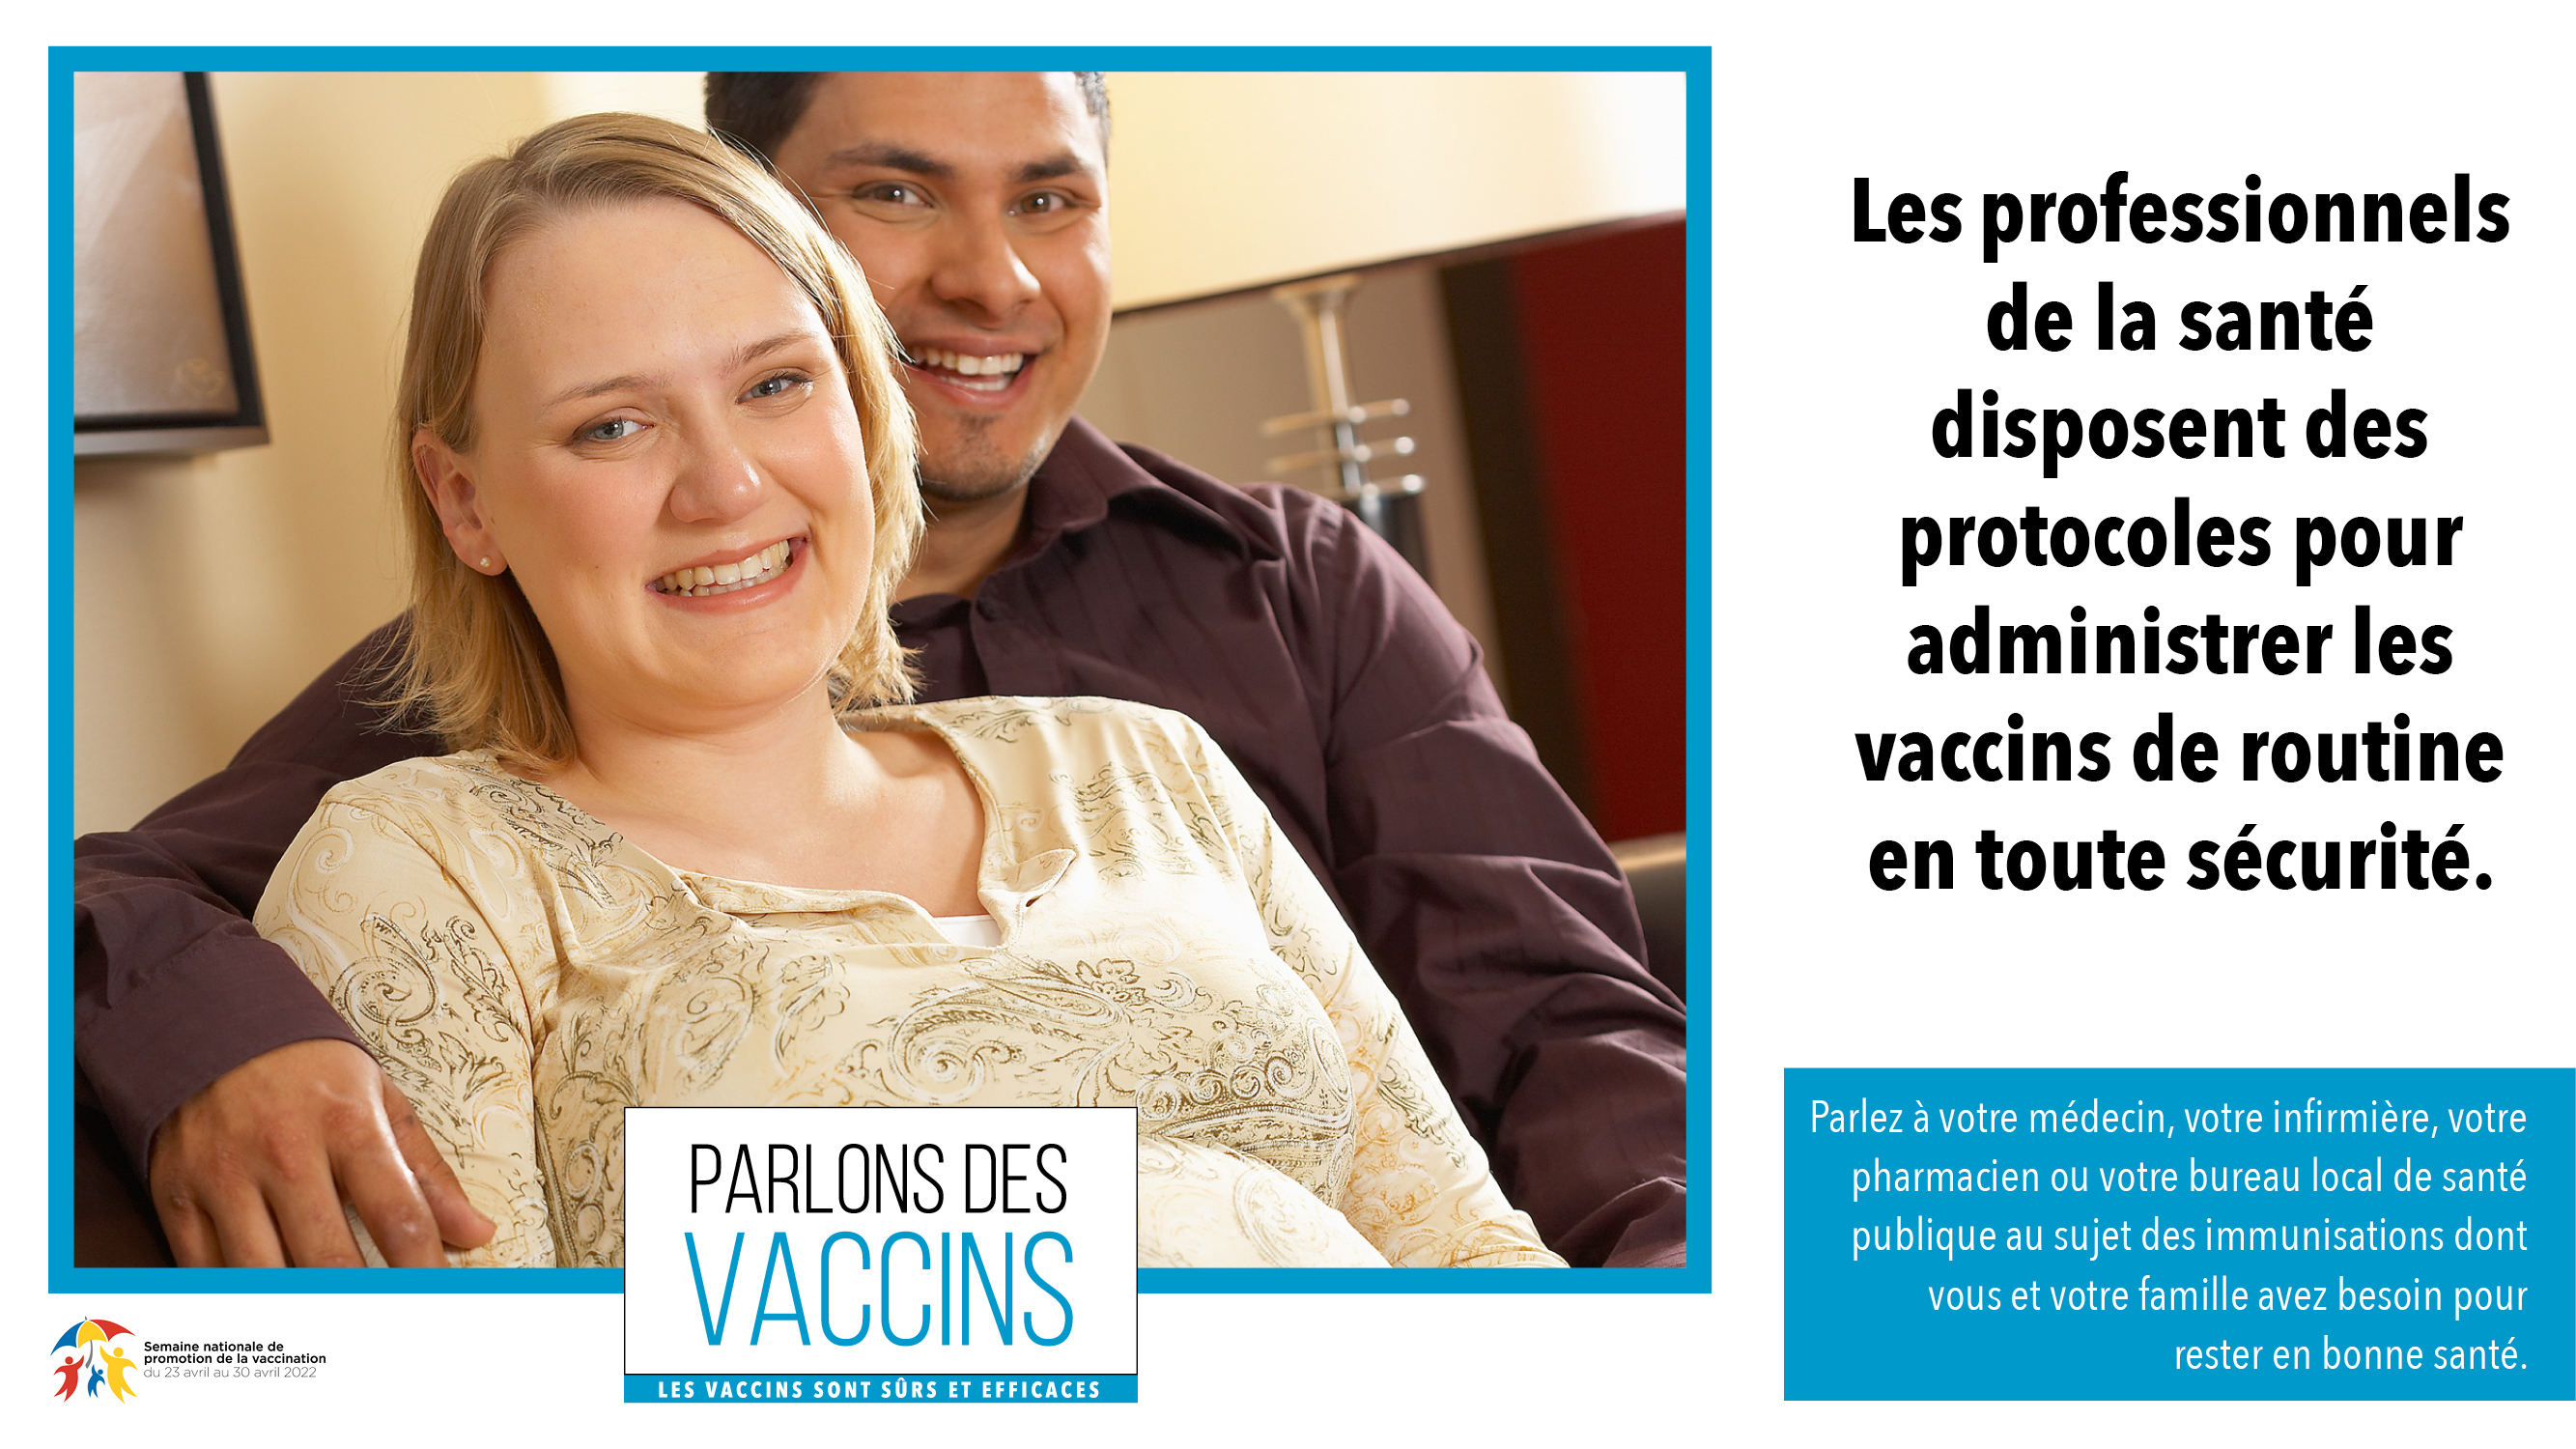 Parlons des vaccins - image pour médias sociaux A - pour Twitter